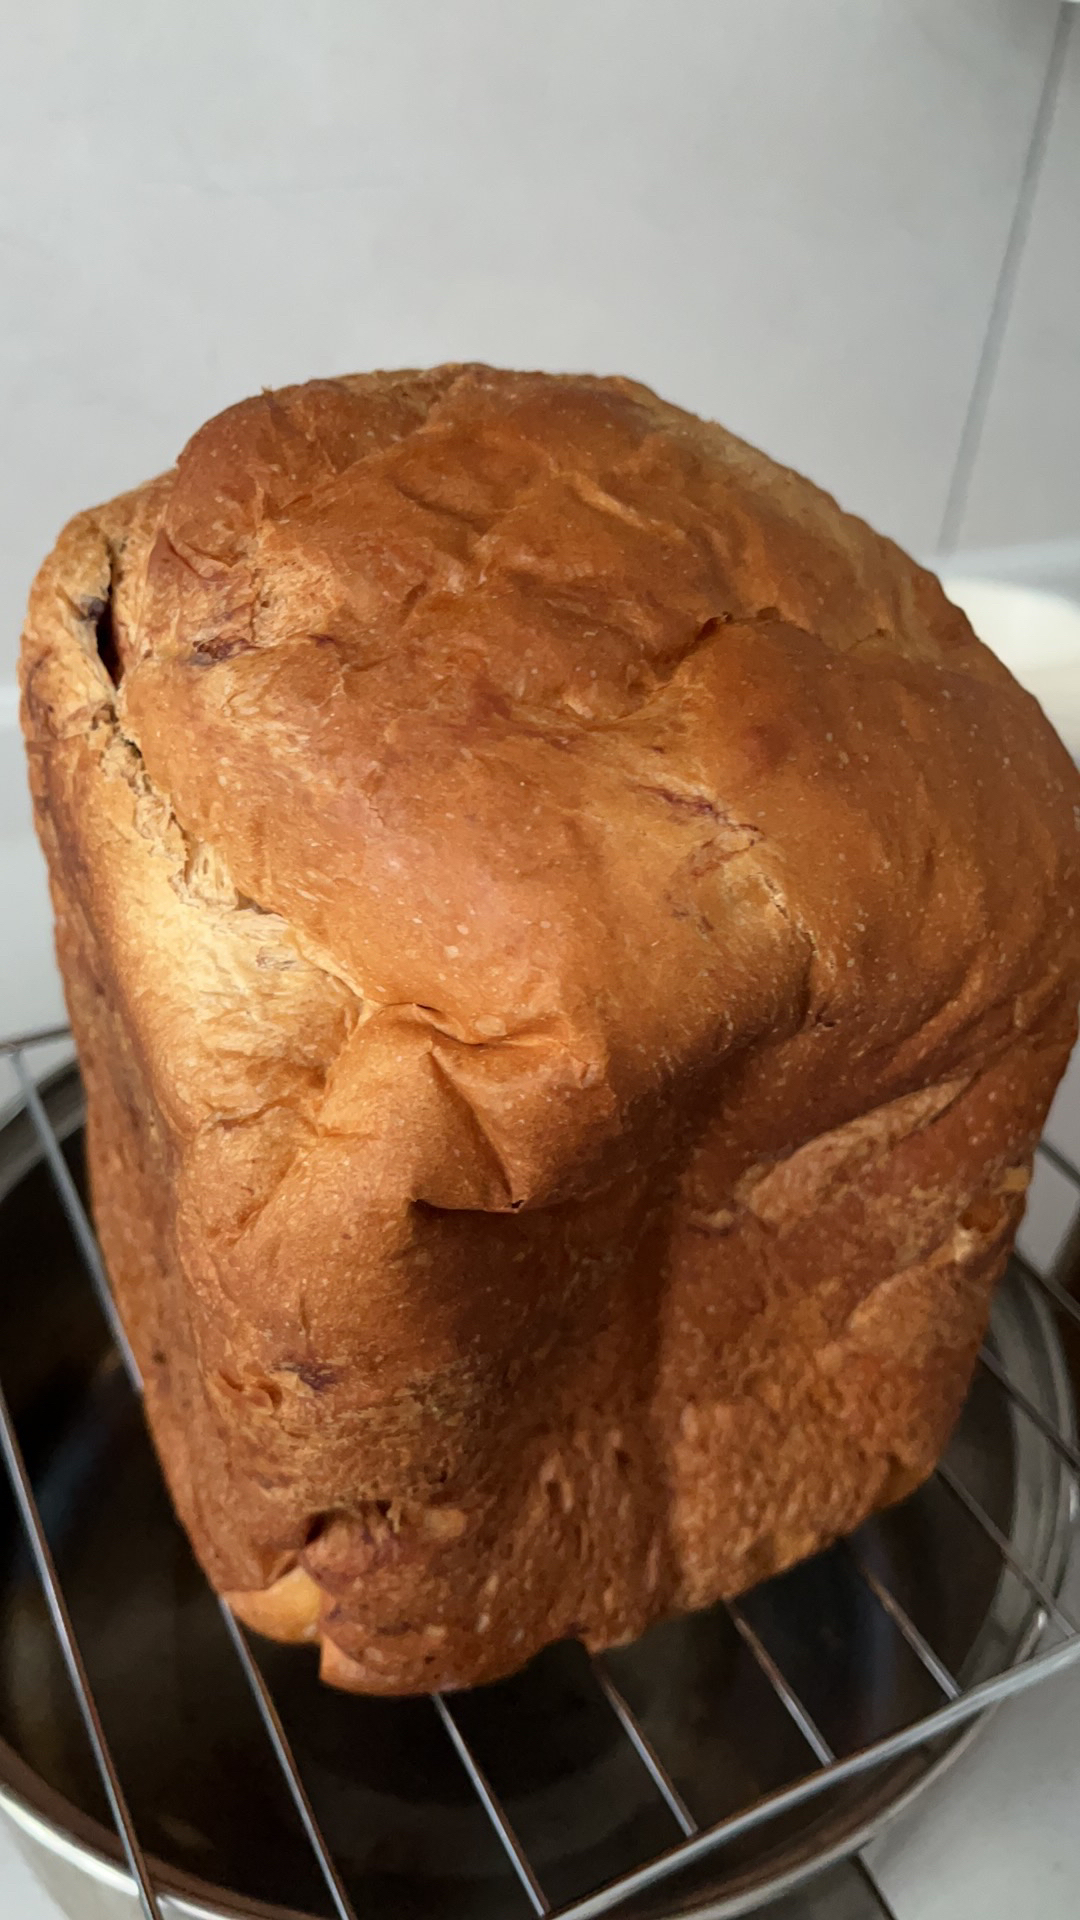 美的面包机懒人拉丝面包